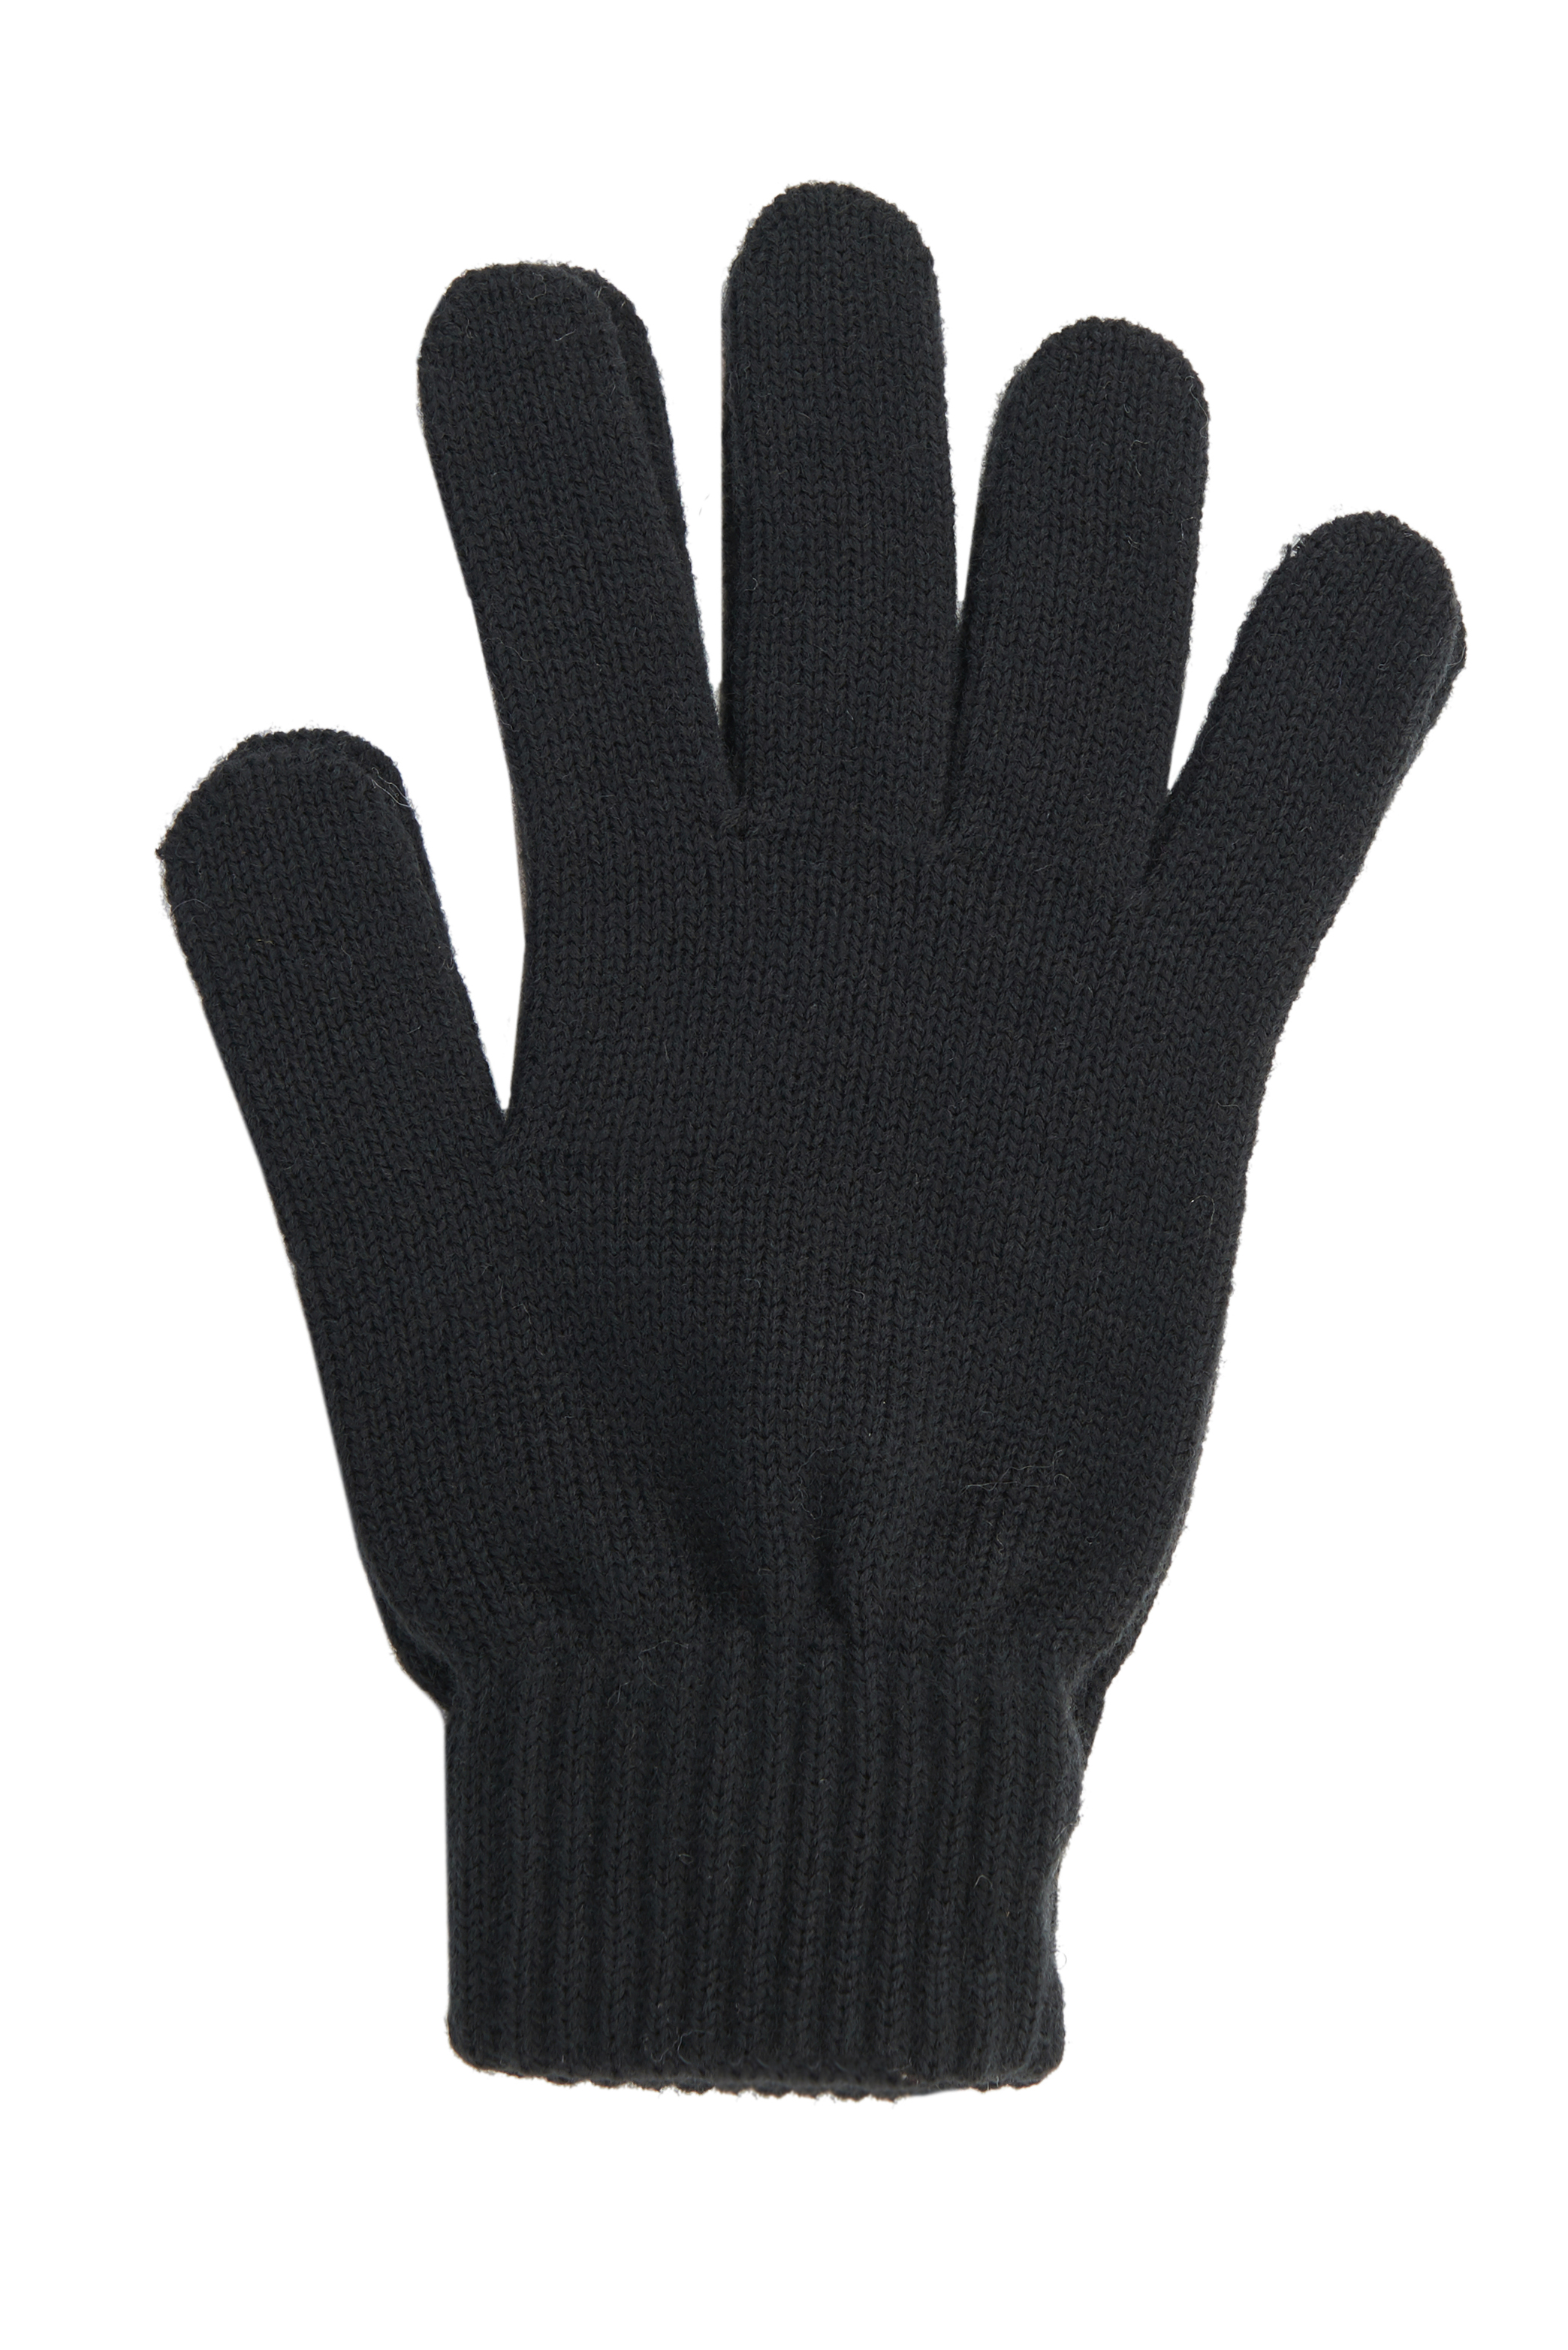 Полушерстяные перчатки (арт. baon B867502), размер Без/раз, цвет черный